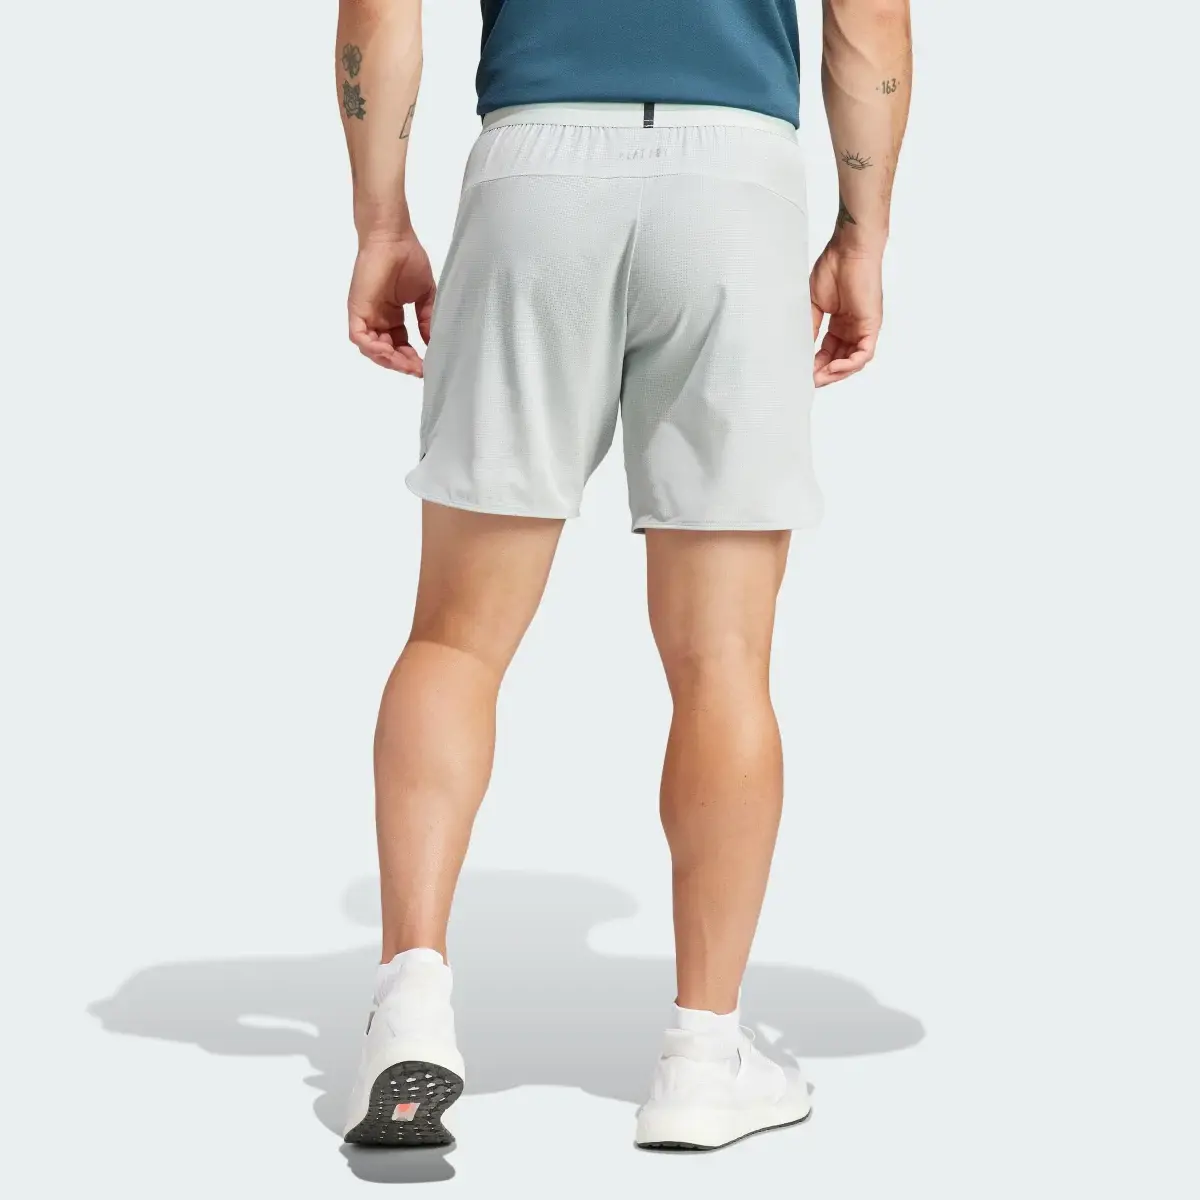 Adidas Designed for Training HIIT Training Shorts. 2